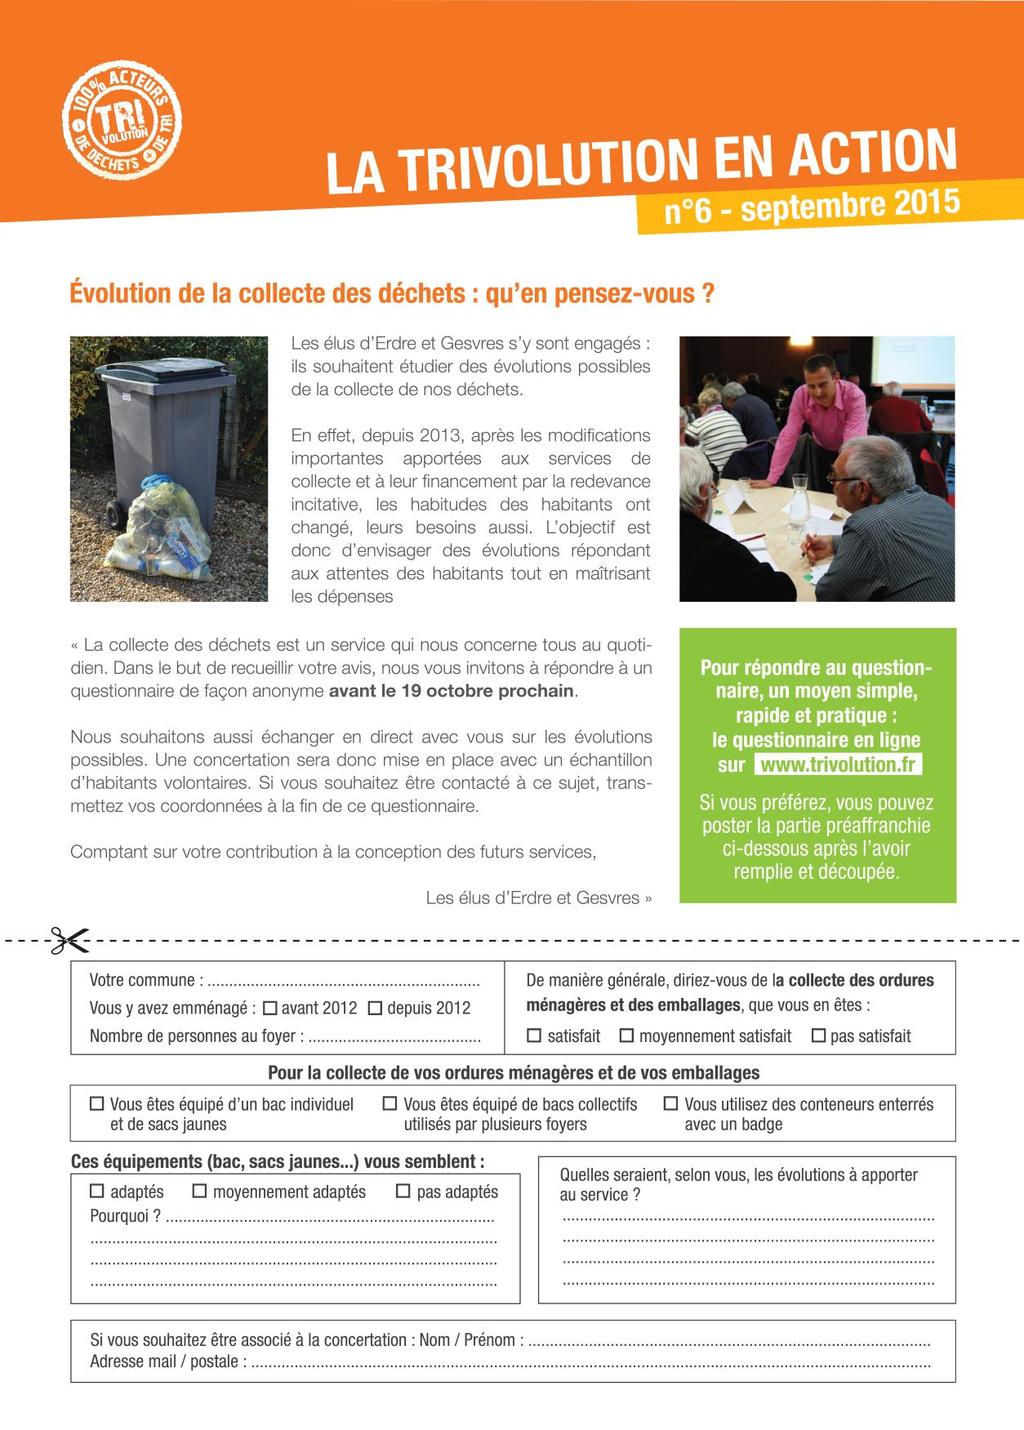 En octobre 2015, la Communauté de communes d Erdre & Gesvres a réalisé une étude de satisfaction auprès des habitants de son territoire concernant la qualité du service de collecte des déchets.